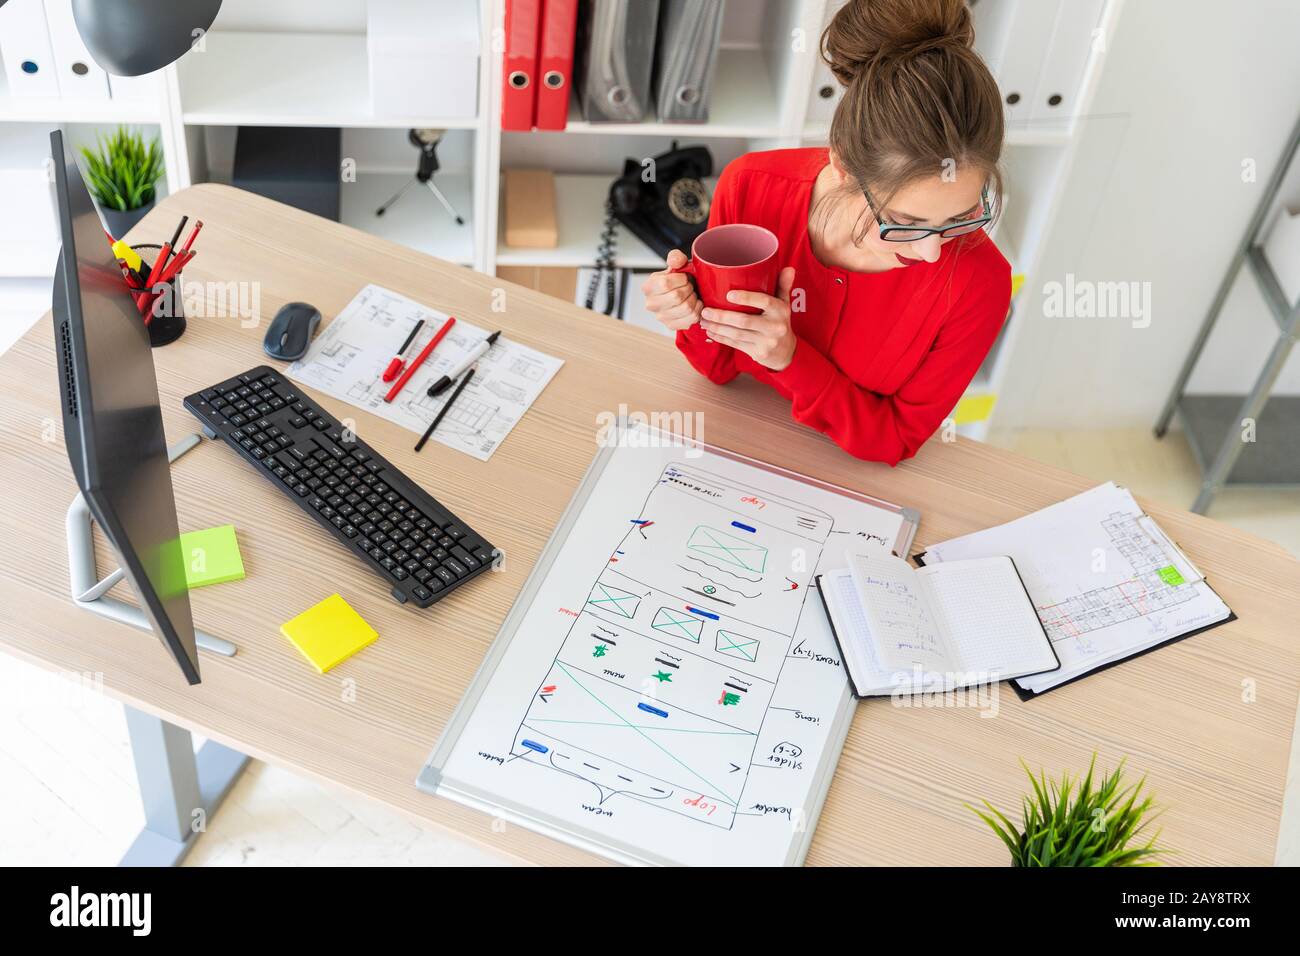 Ein junges Mädchen sitzt am Tisch im Büro, hält einen roten Becher in den Händen und schaut auf den Notizblock. Eine Magnetplatine Stockfoto